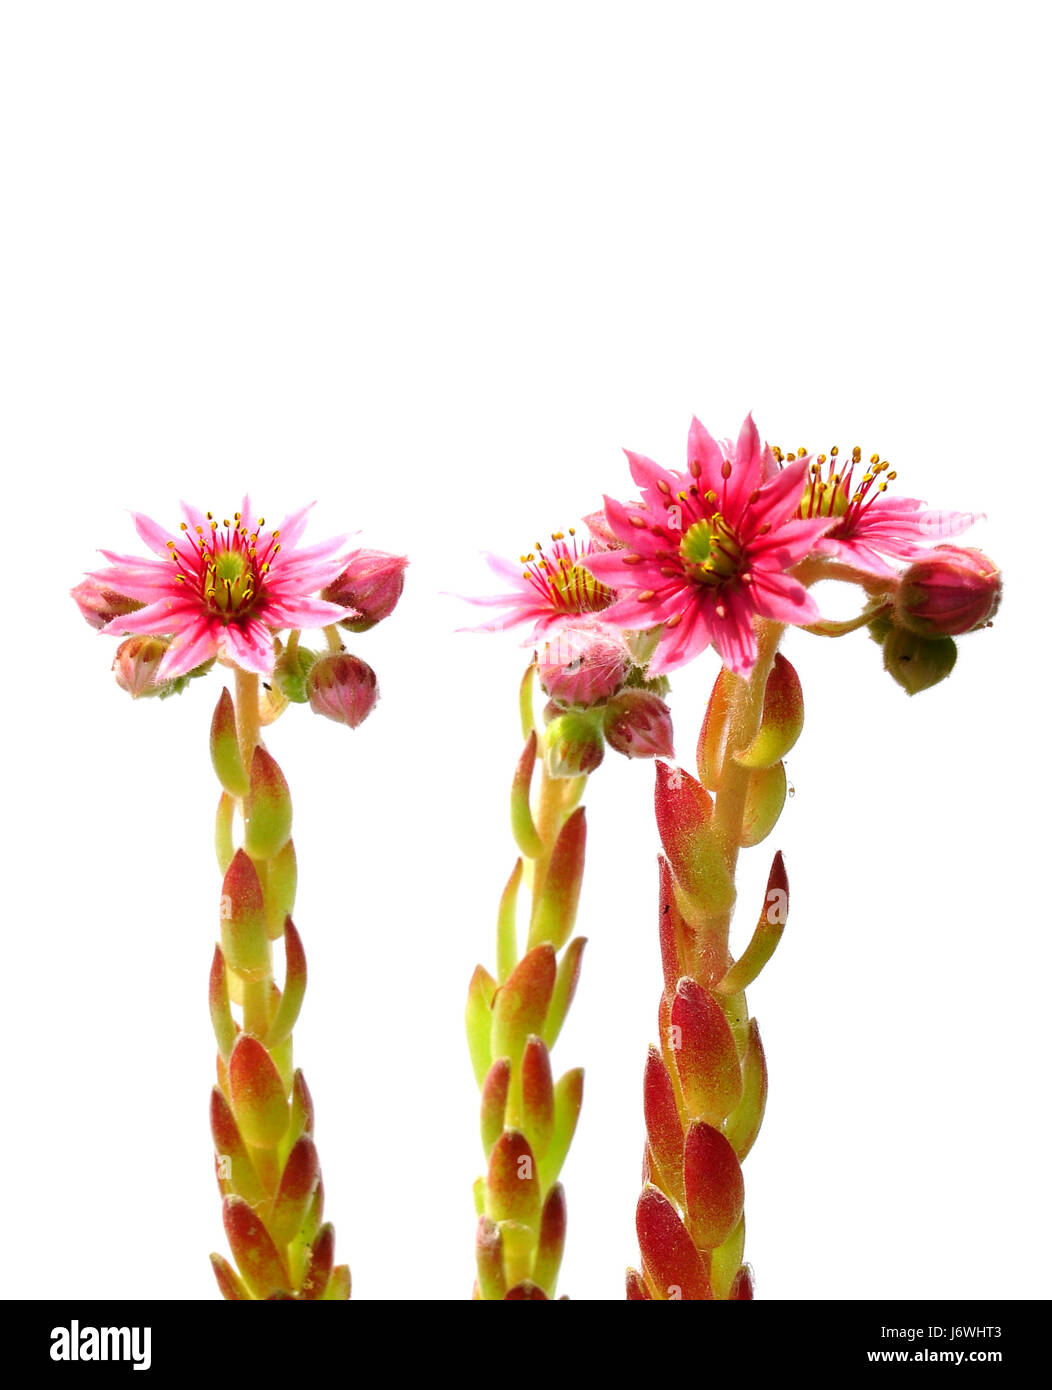 houseleek flowers (sempervivum Stock Photo - Alamy